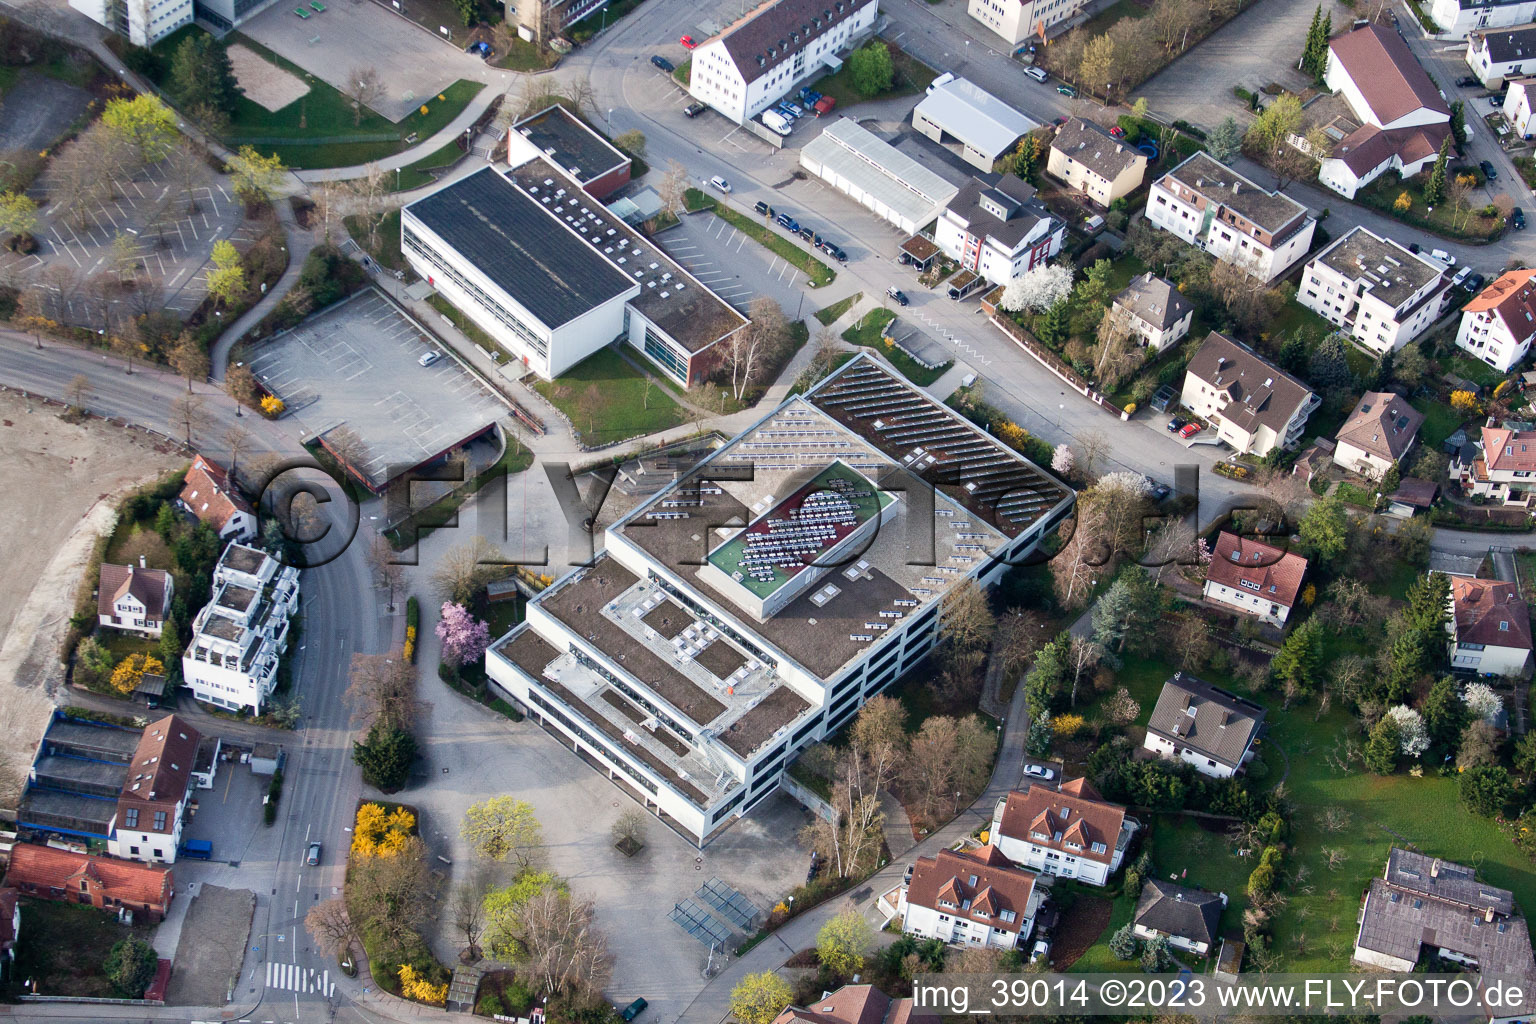 Luftbild von Johannes-Kepler-Gymnasium, Lindenstr in Leonberg im Bundesland Baden-Württemberg, Deutschland